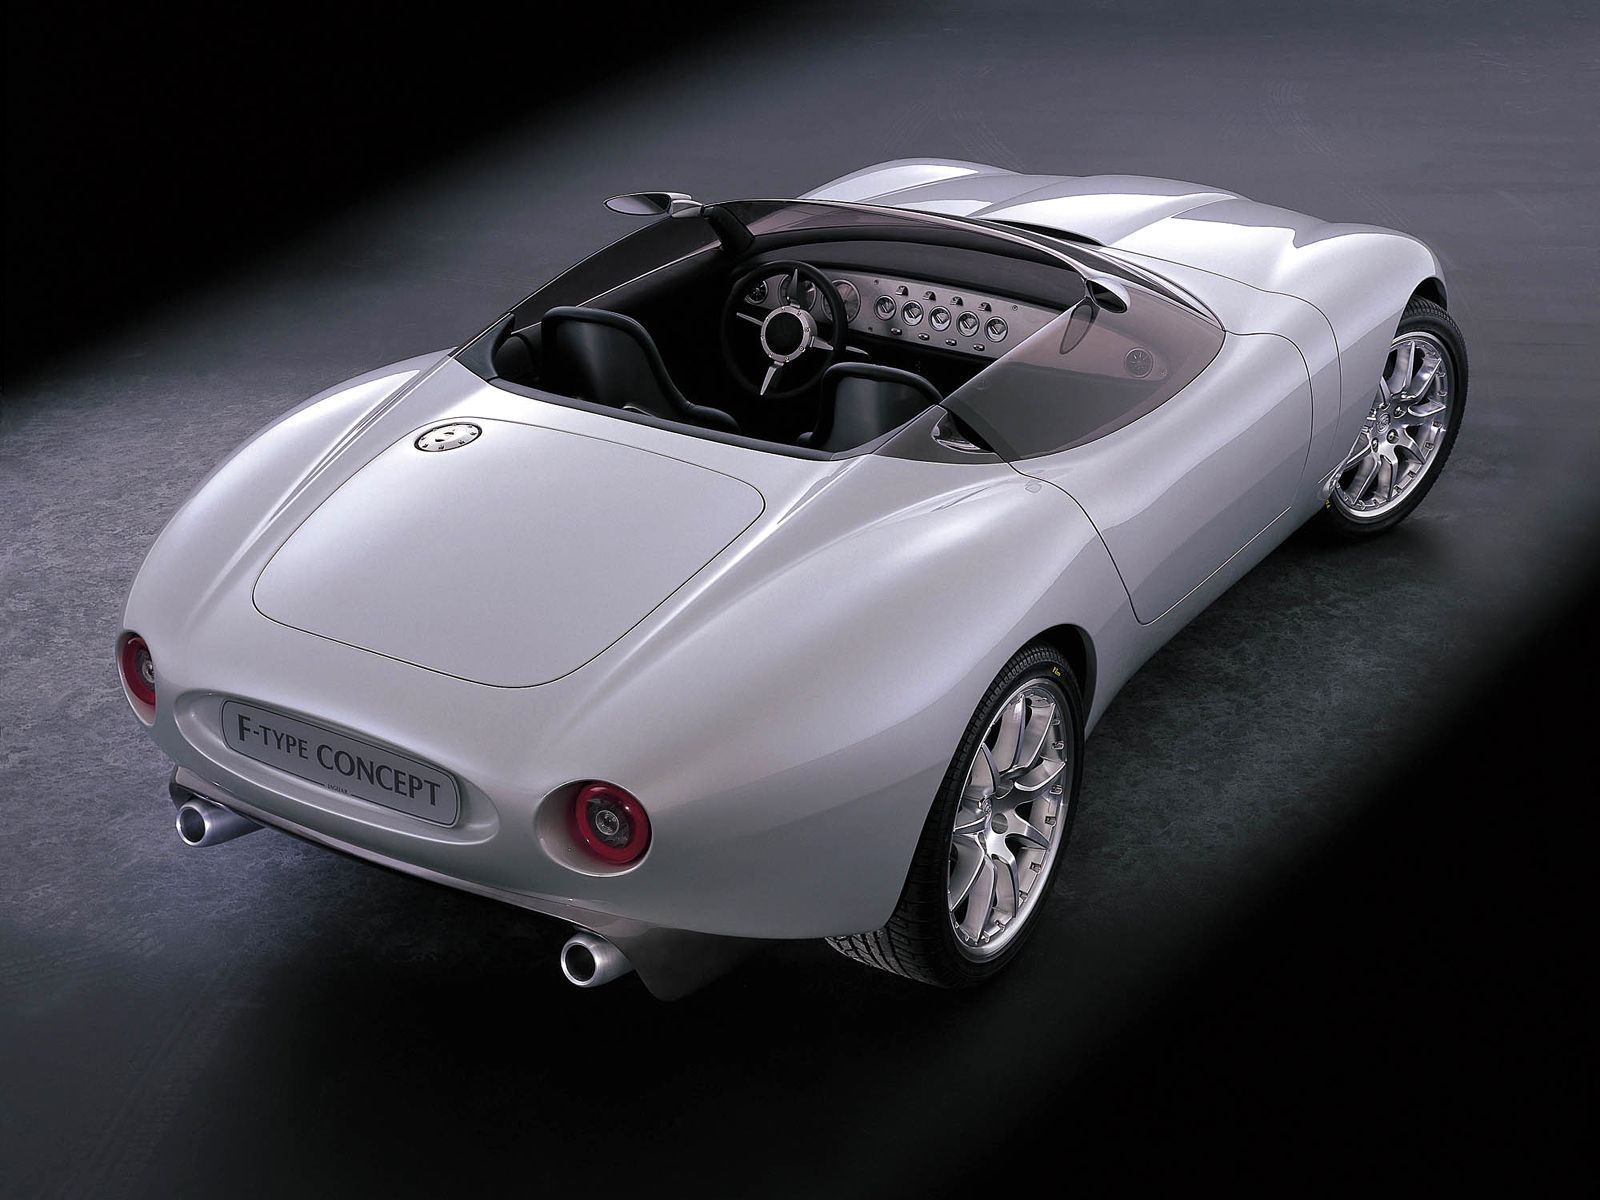 2000 Jaguar F-type Concept